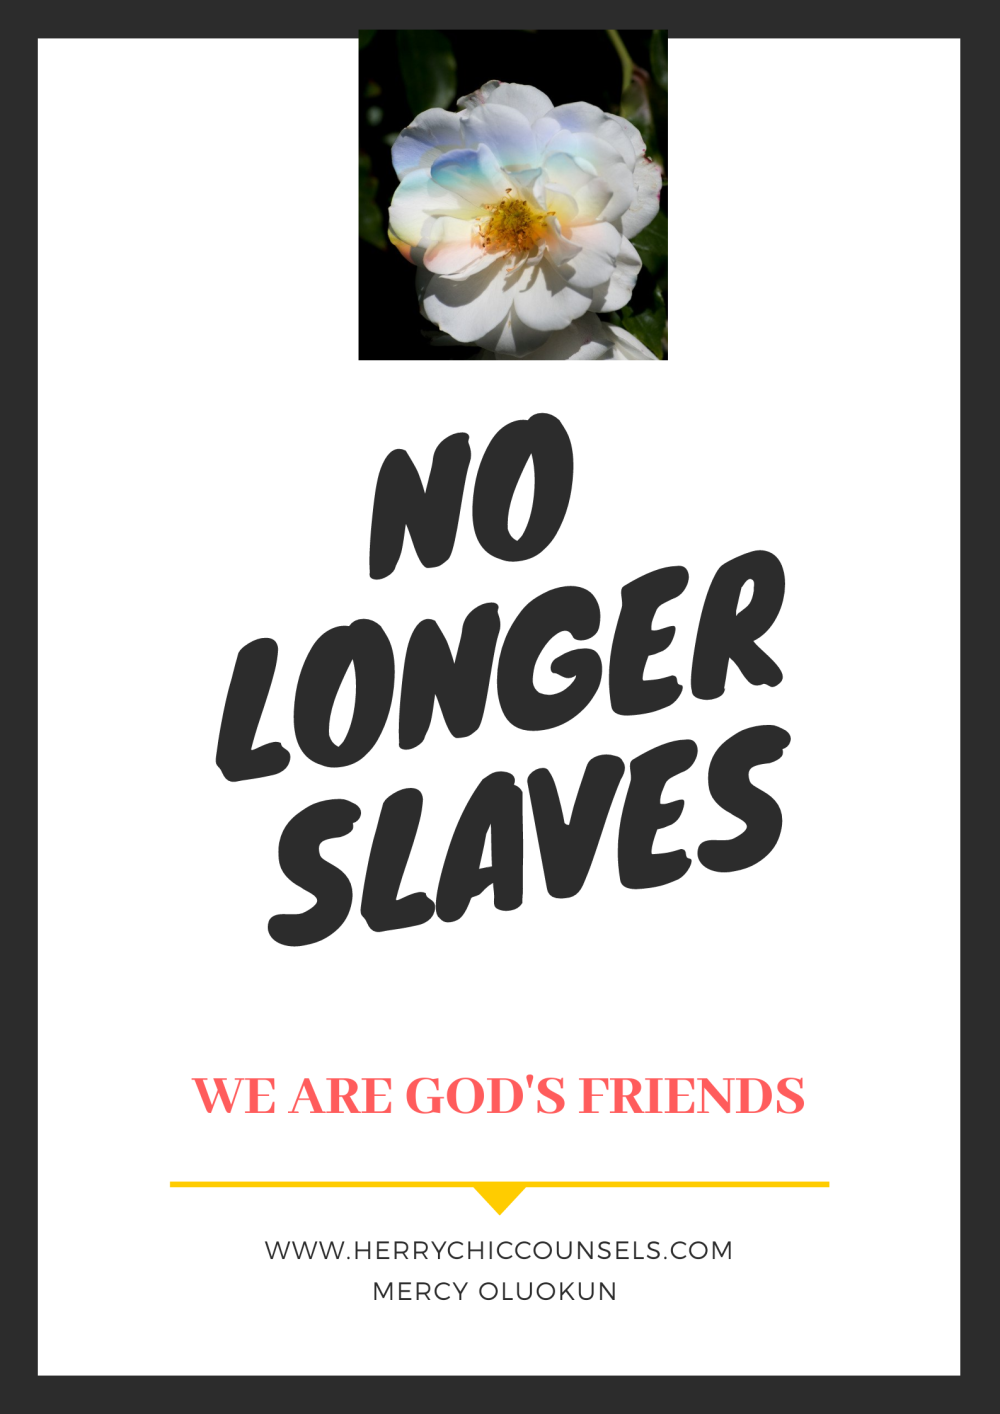 No longer slaves but now God's friend